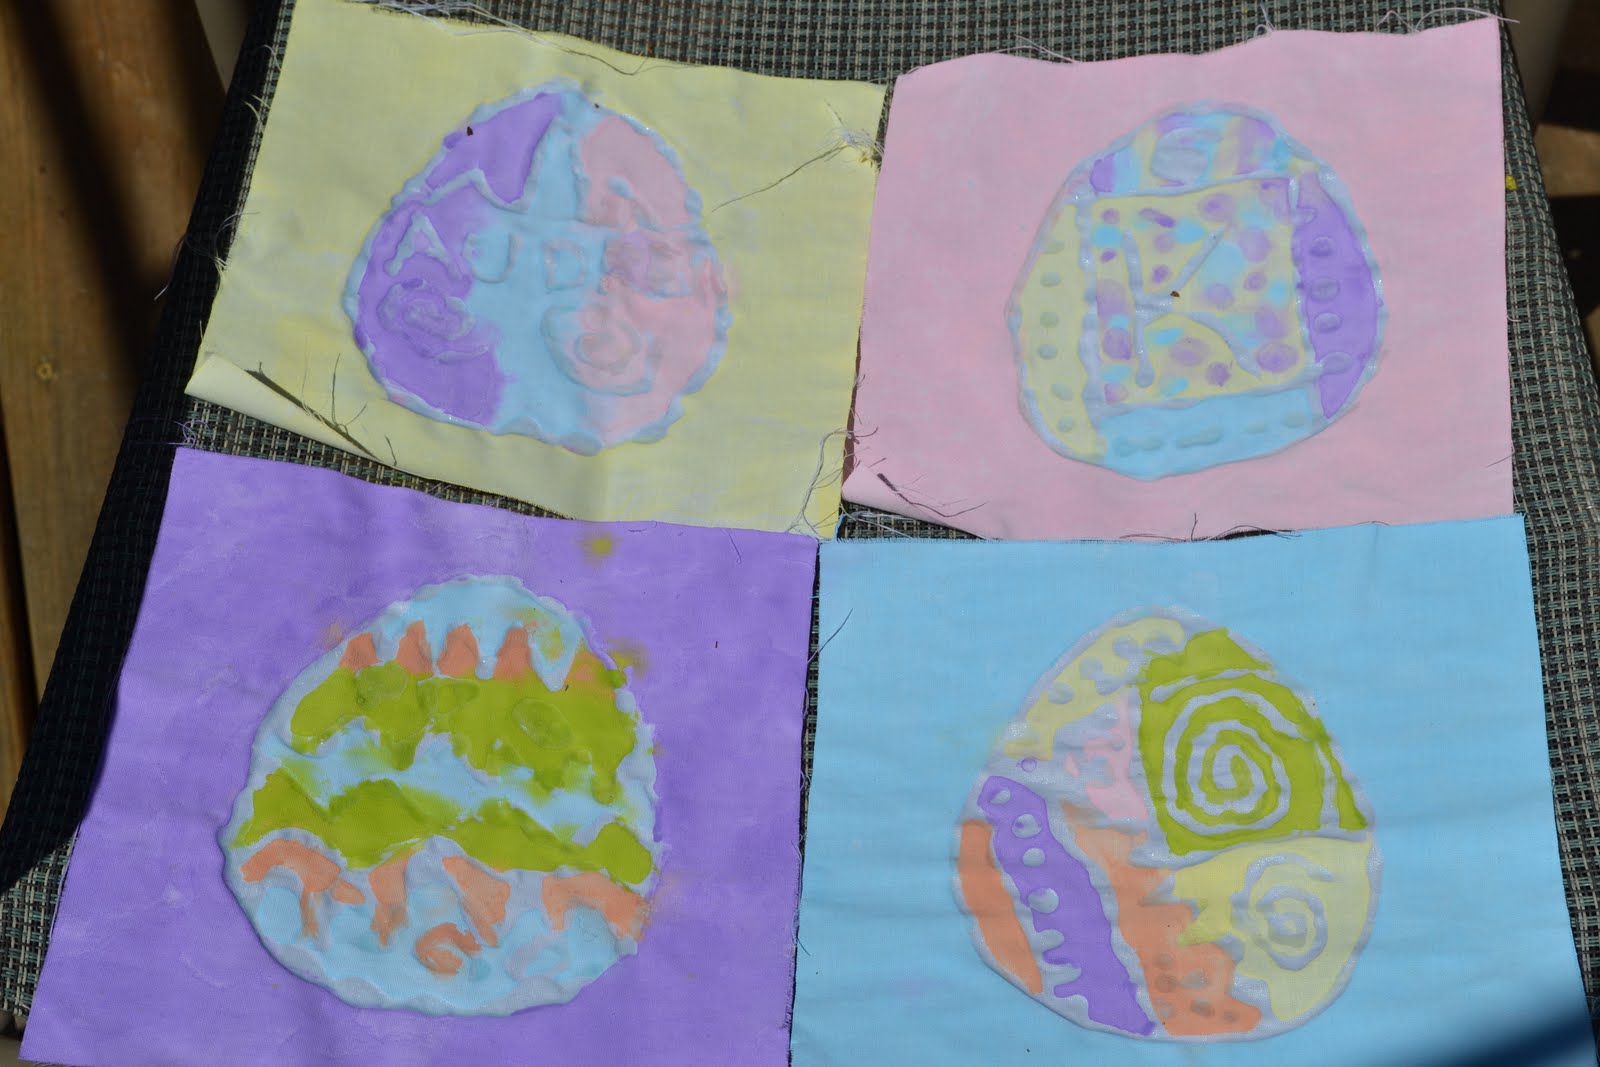 Come Together Kids Glue Batik Easter Fabric